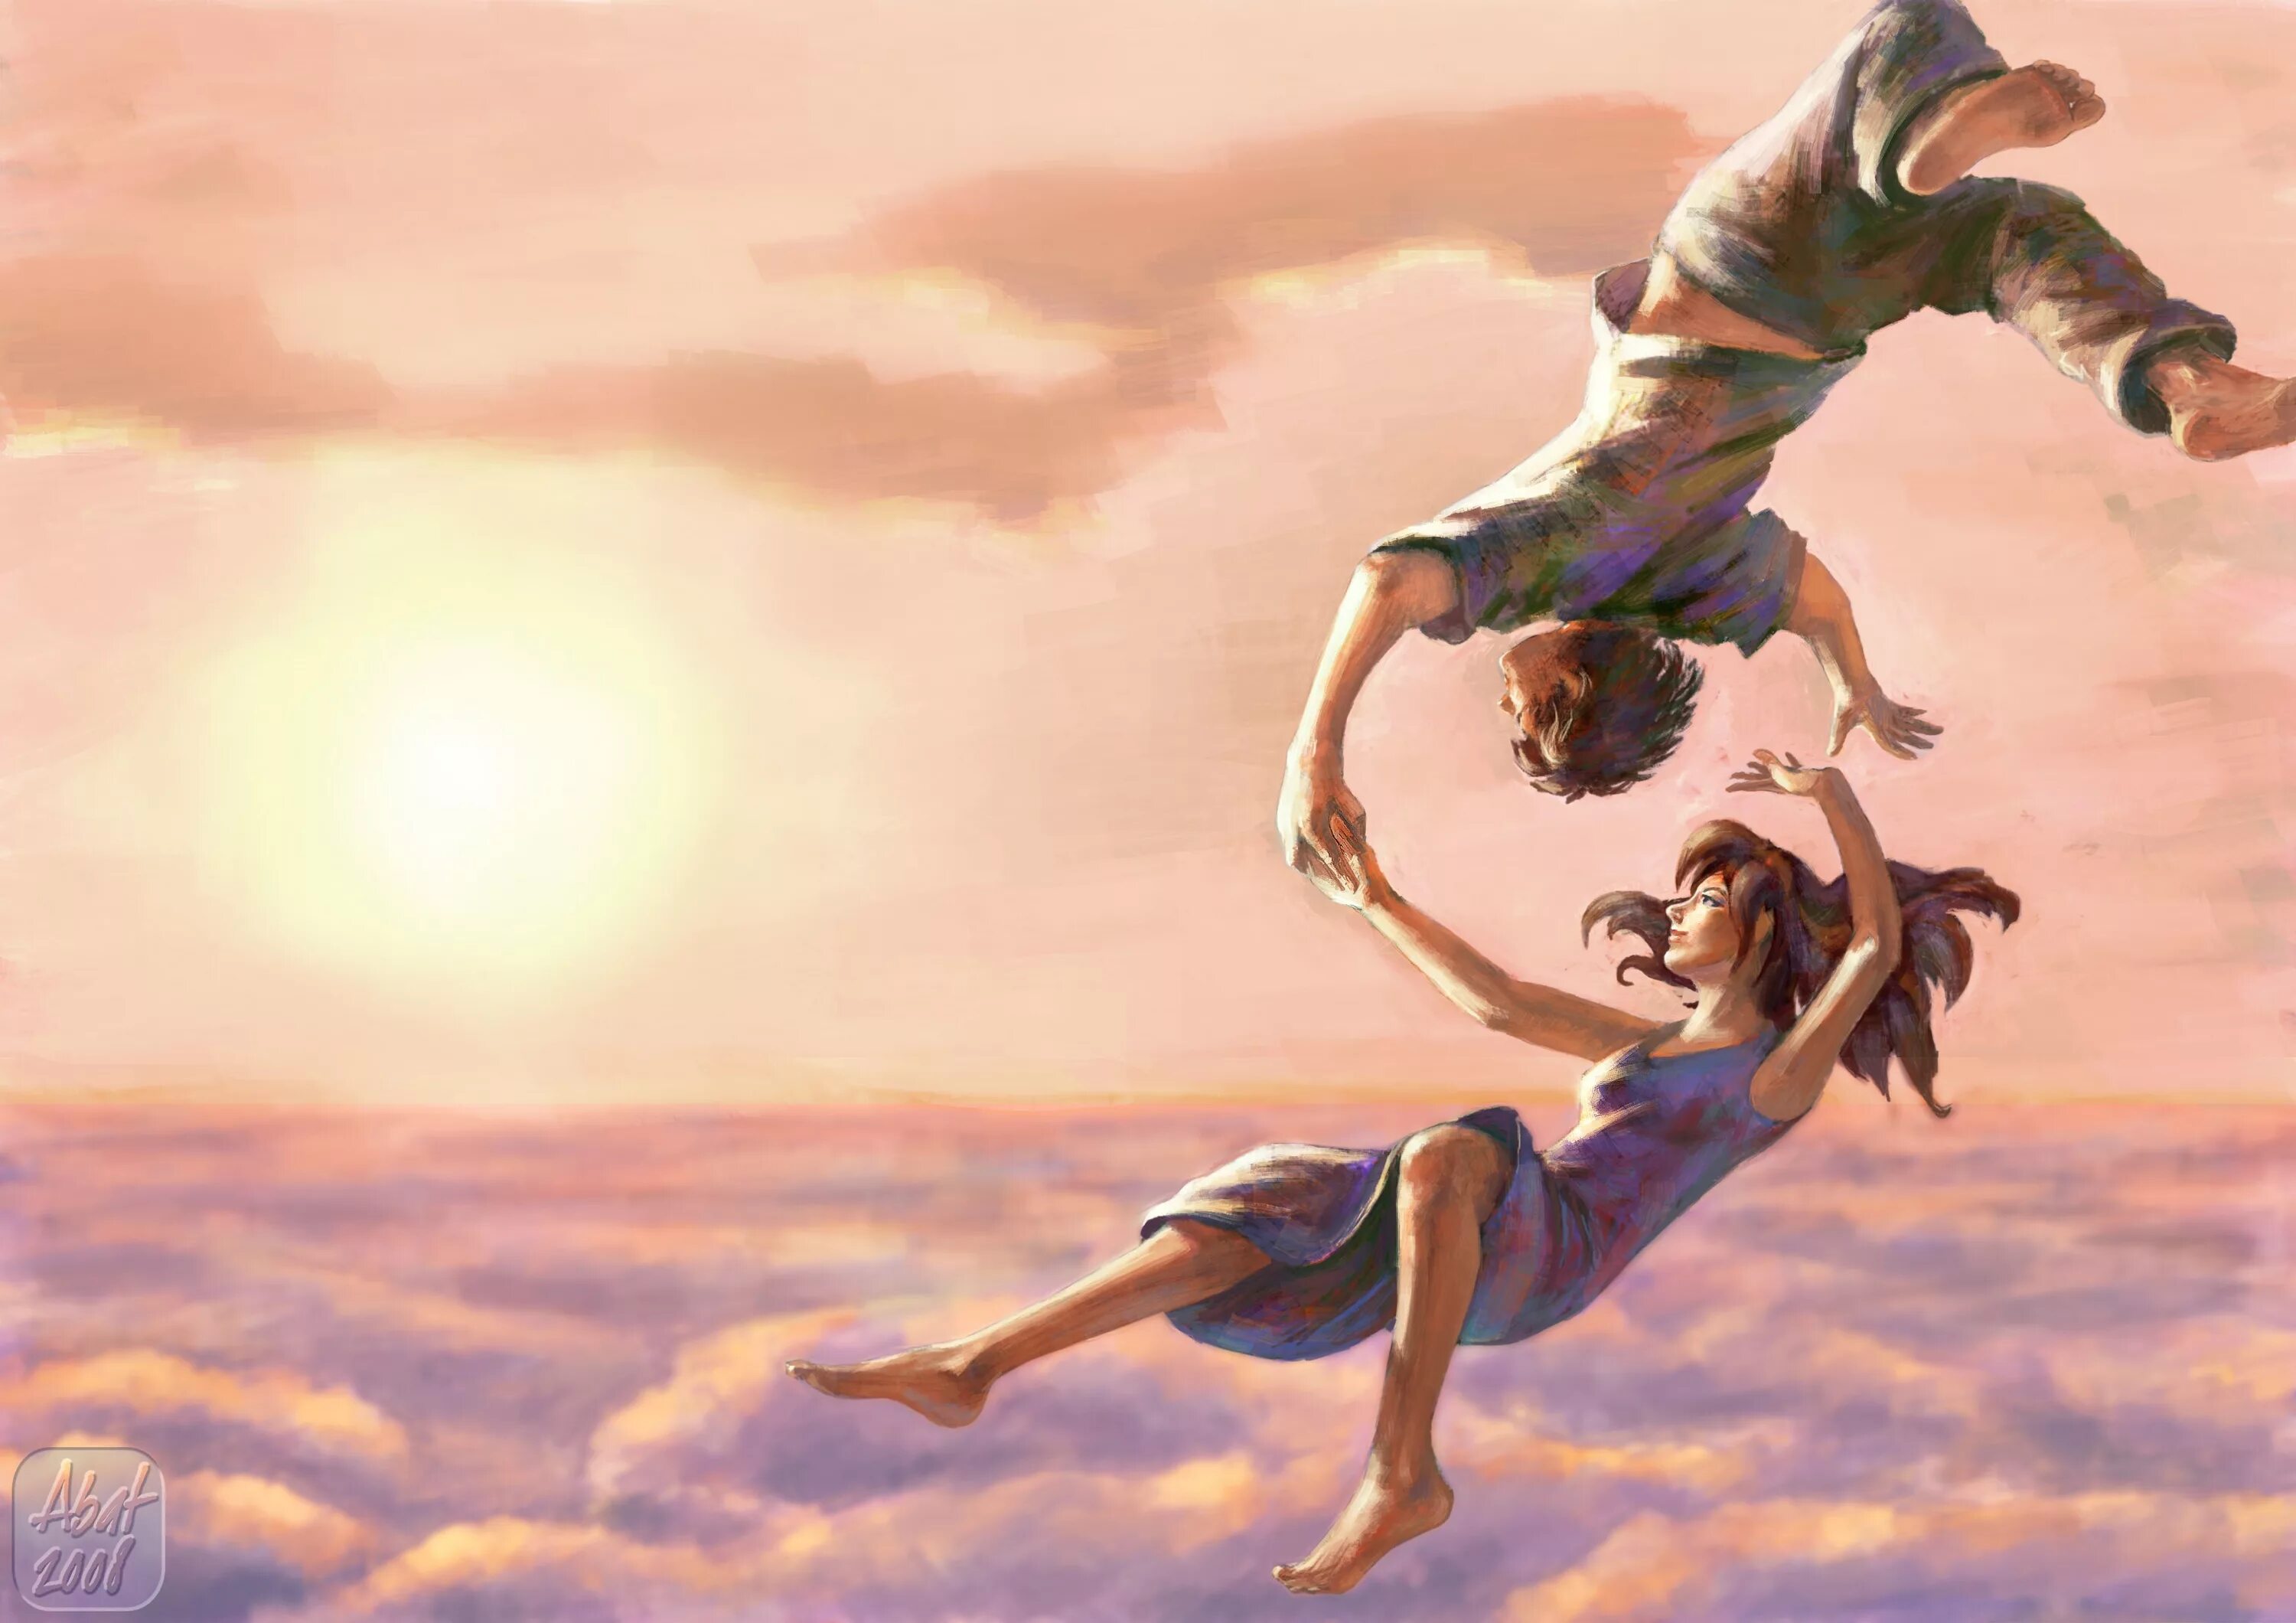 Полетели сильнейшие. Девушка в прыжке. Картина счастье. Красивые иллюстрации. Полет души.